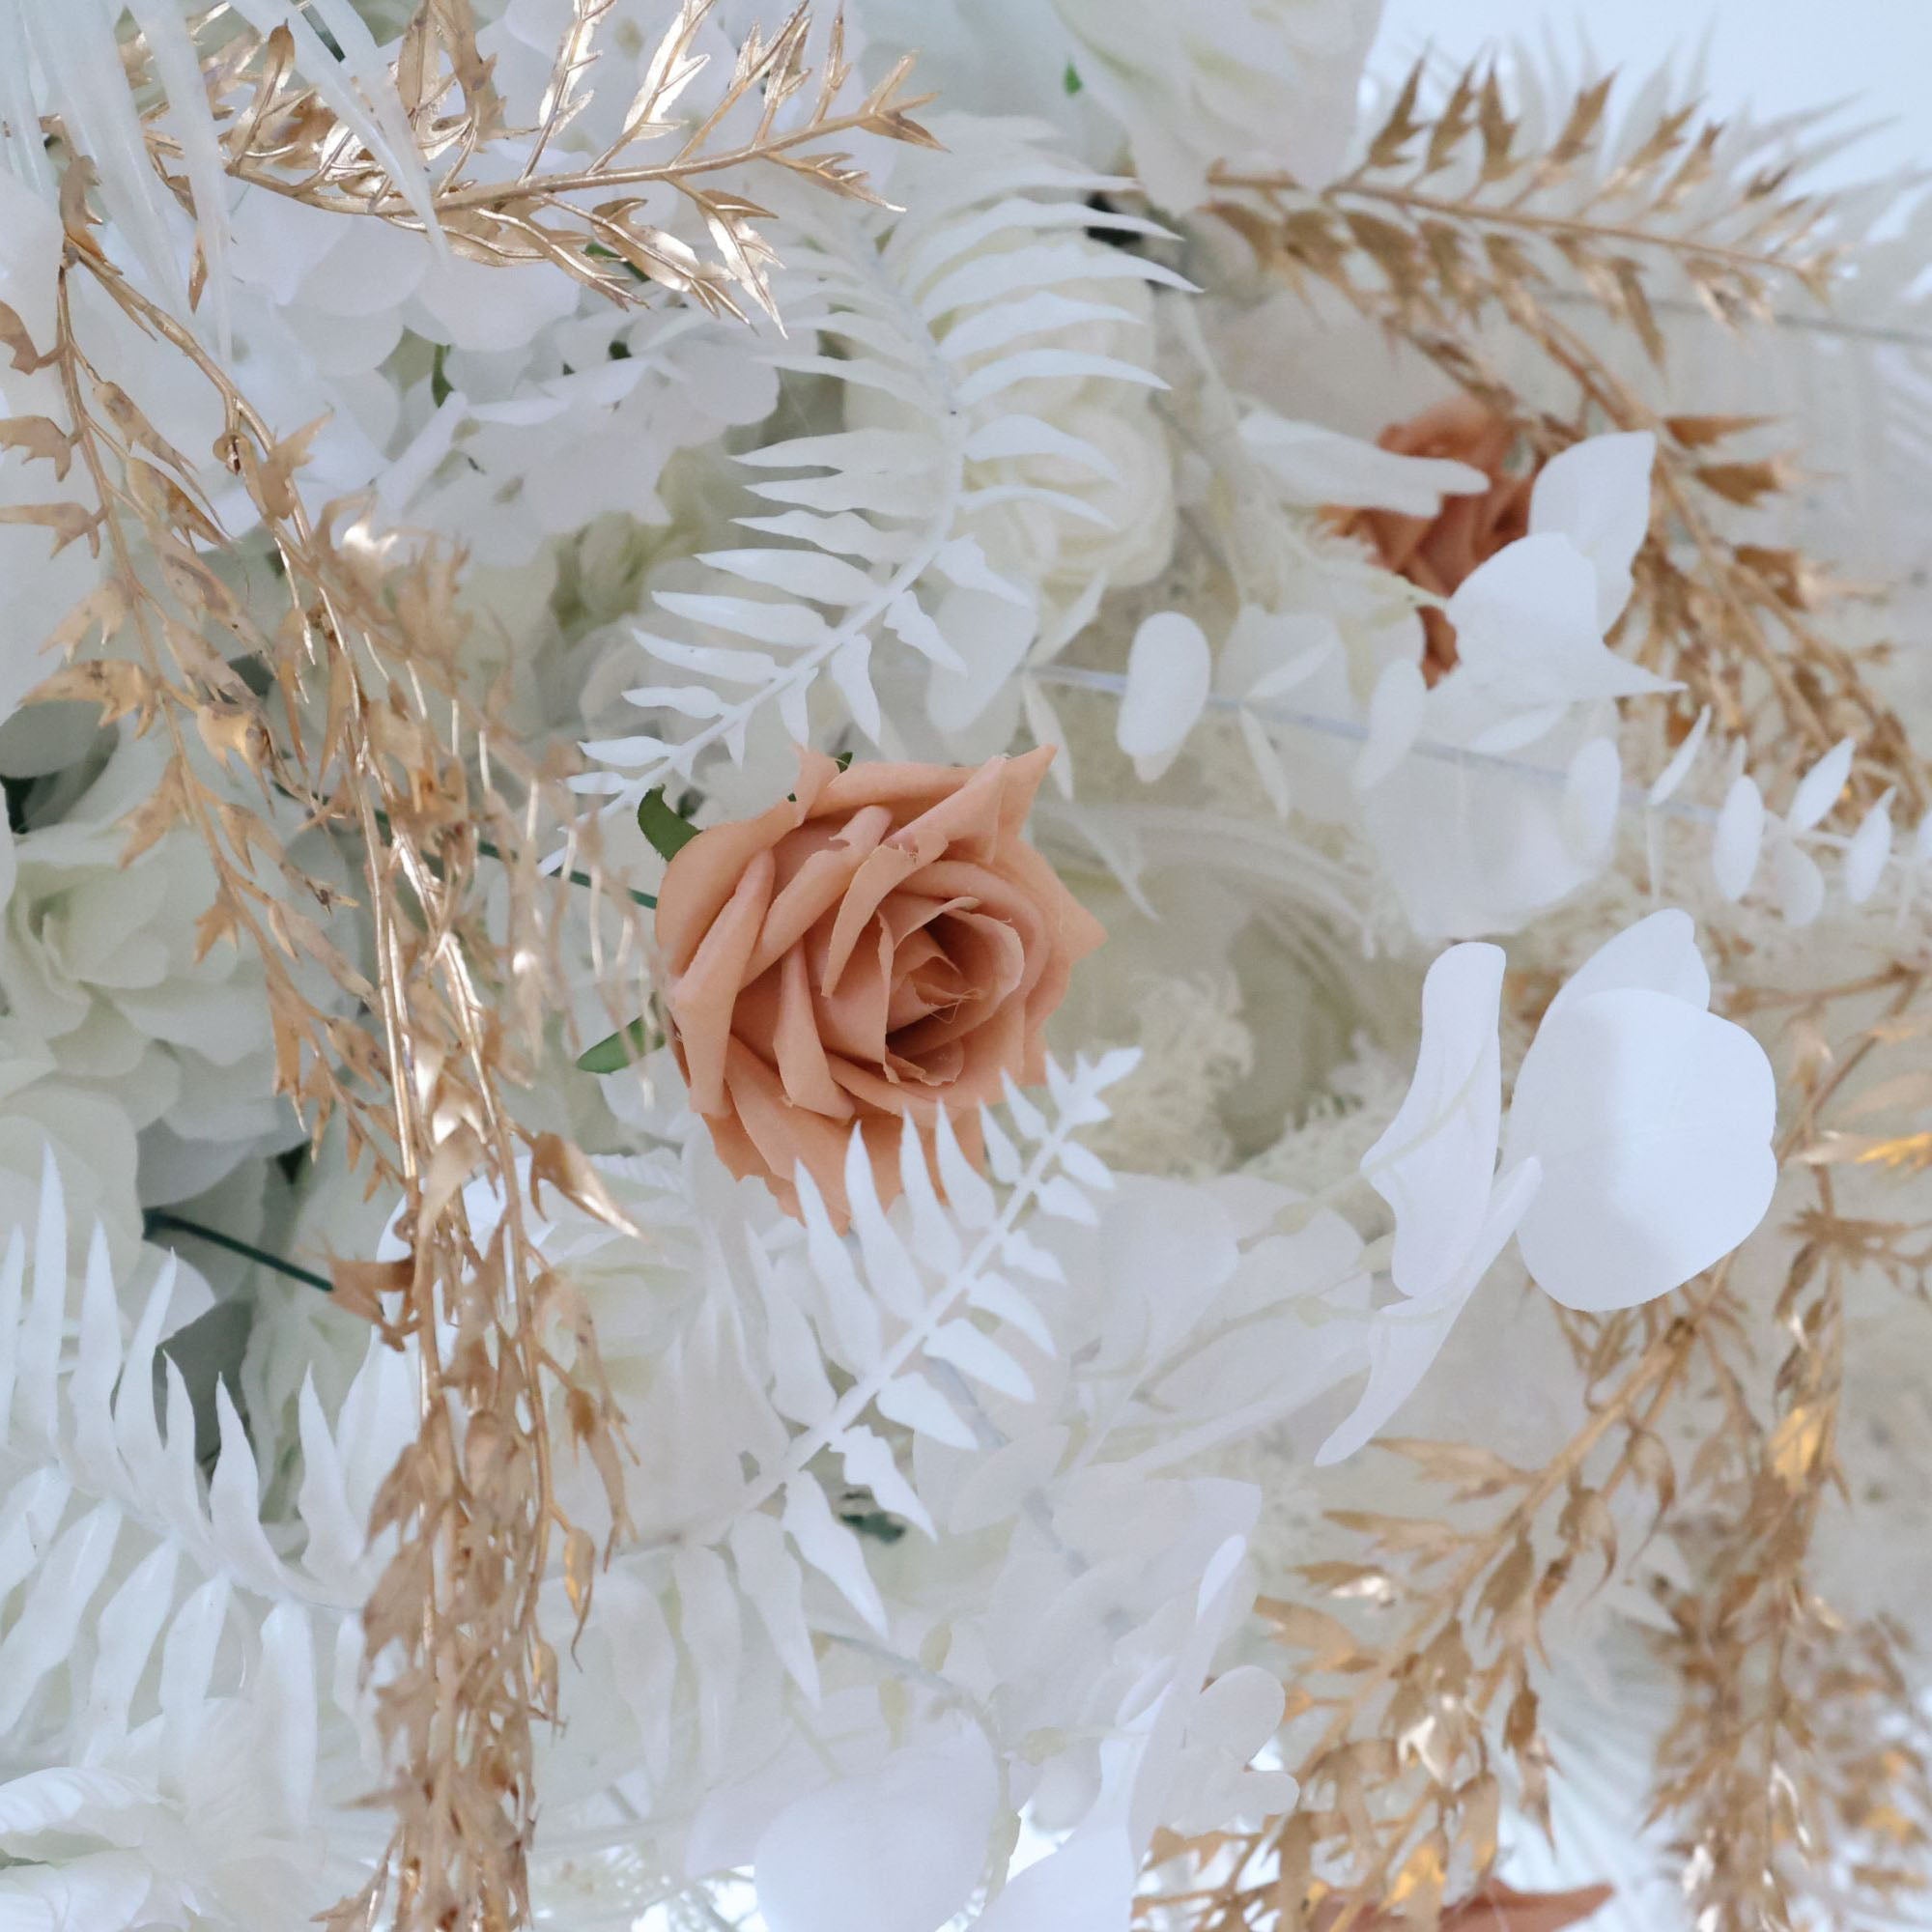 Fleurs Valar retrousser tissu fleur artificielle mur toile de fond de mariage, décor de fête florale, photographie d'événement-VF-313 